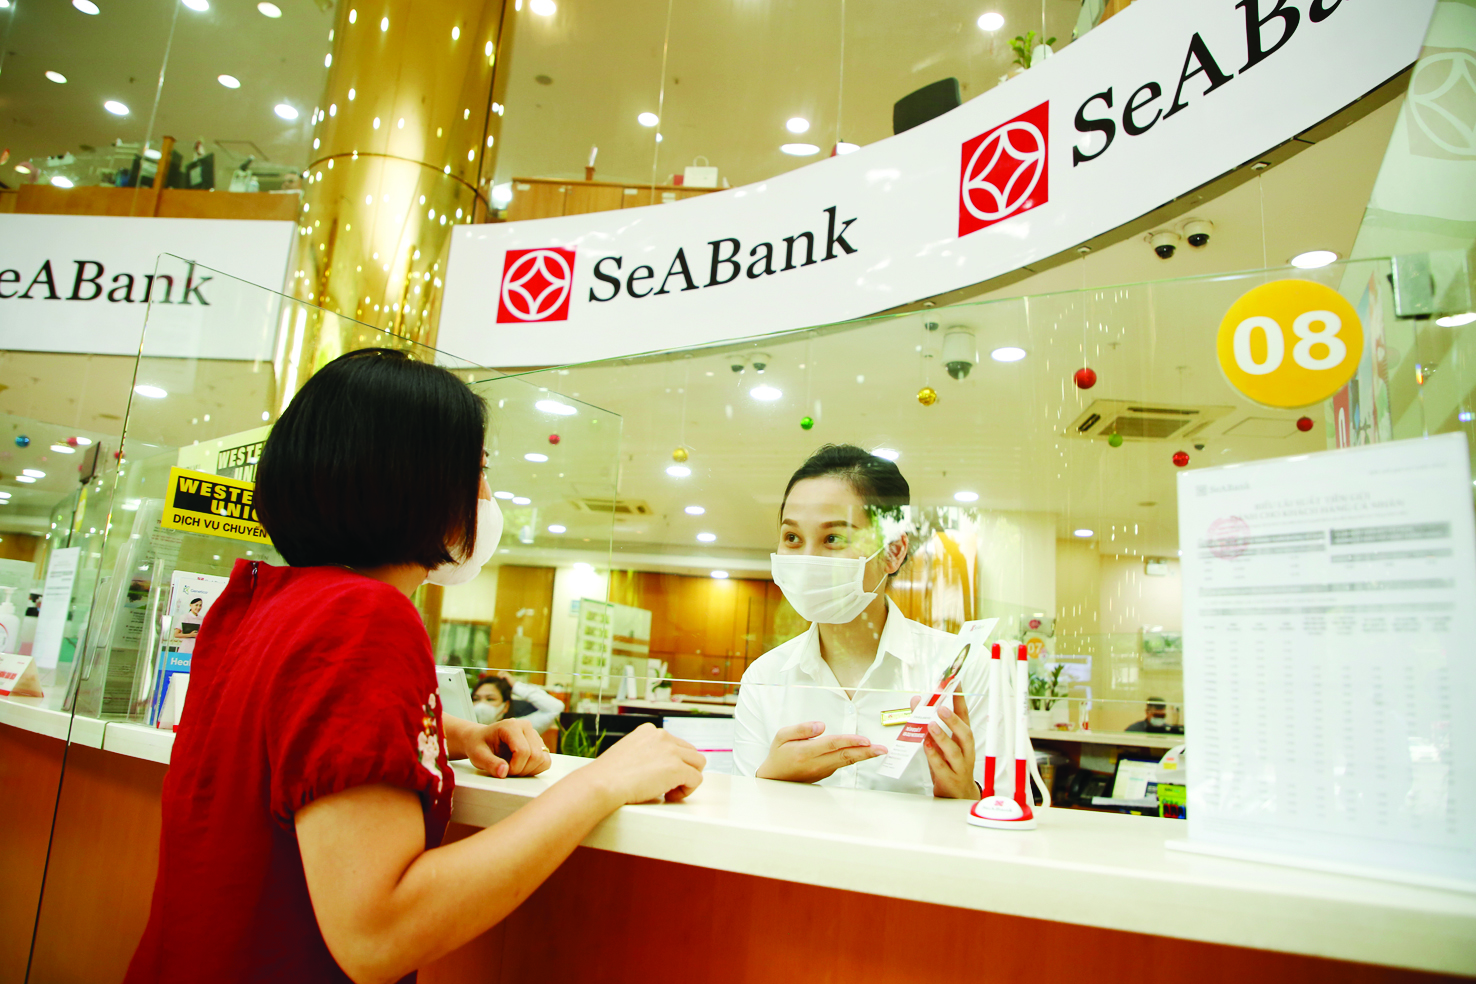  Với việc cung cấp danh mục sản phẩm đầu tư đa dạng, SeABank đã giúp khách hàng mở rộng thêm các cơ hội đầu tư, gia tăng lợi nhuận.